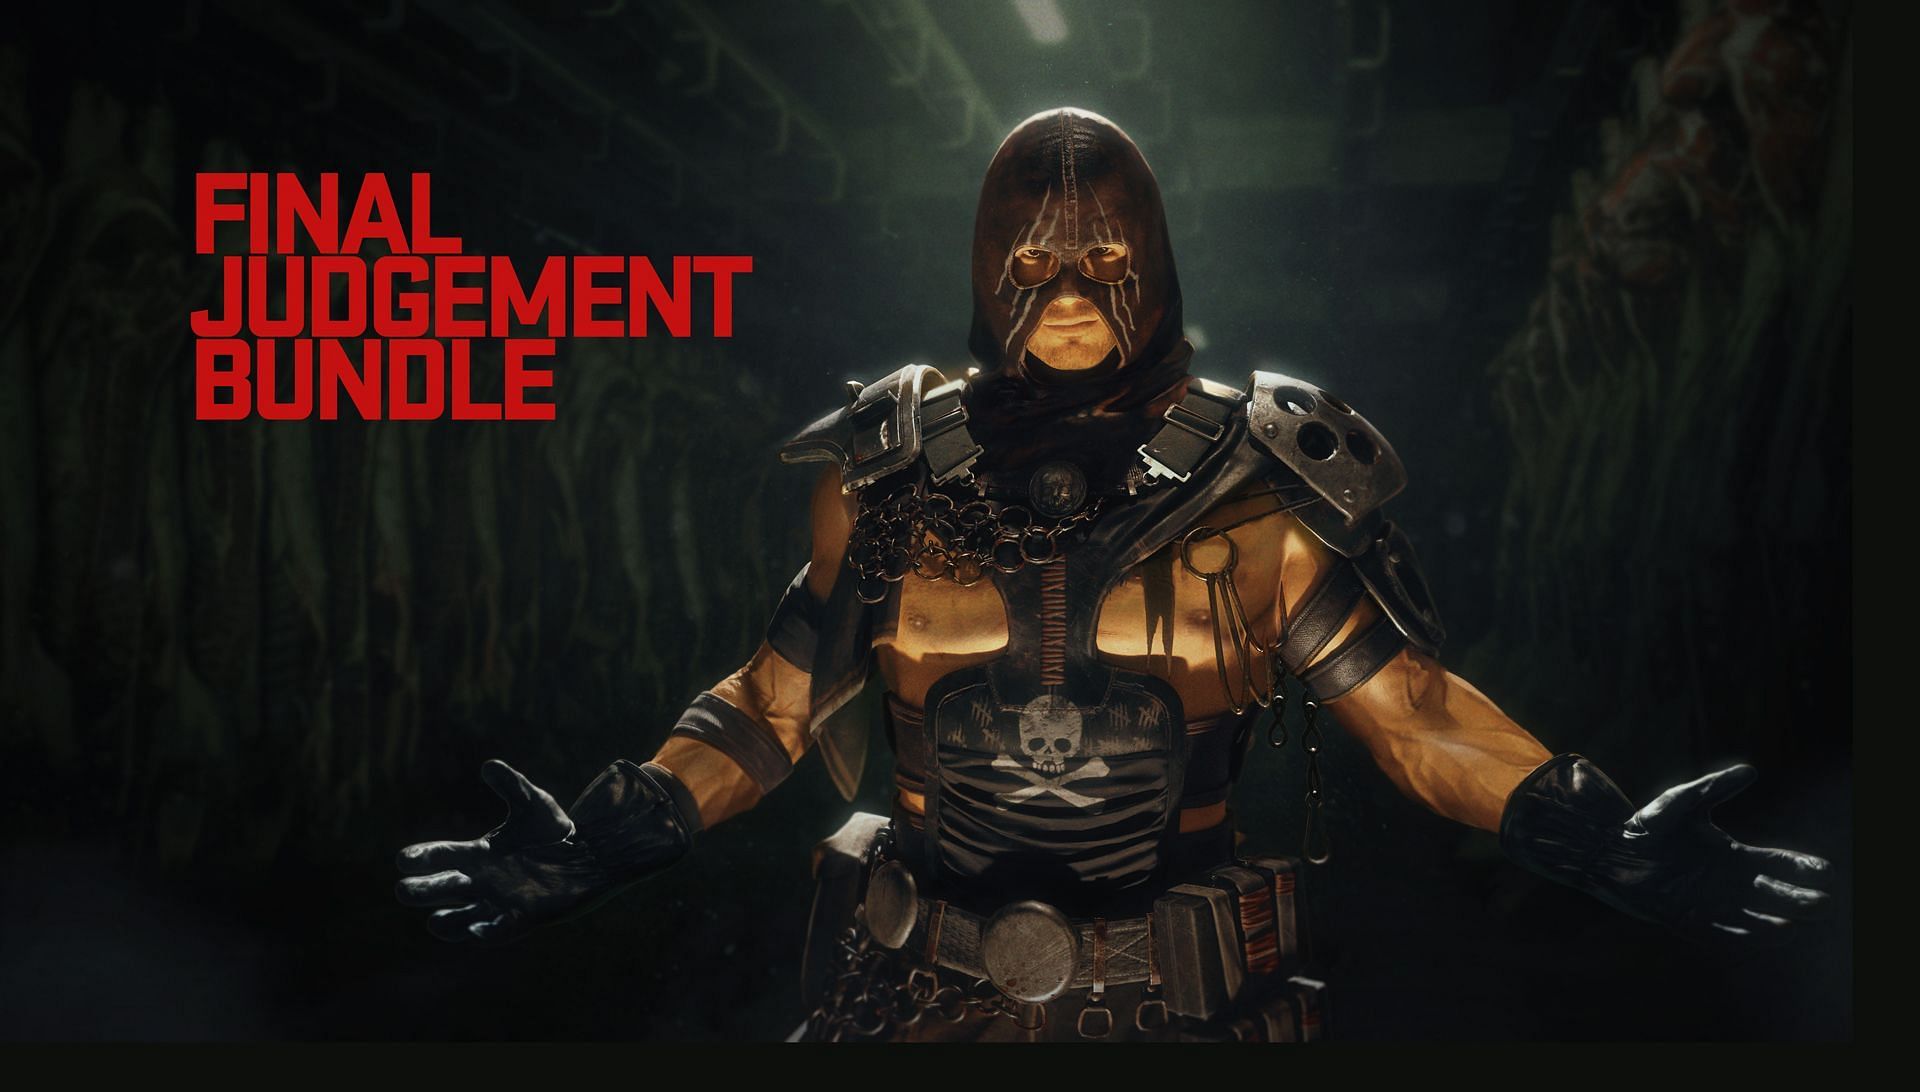 Final Judgement Bundle (Image via Activision)